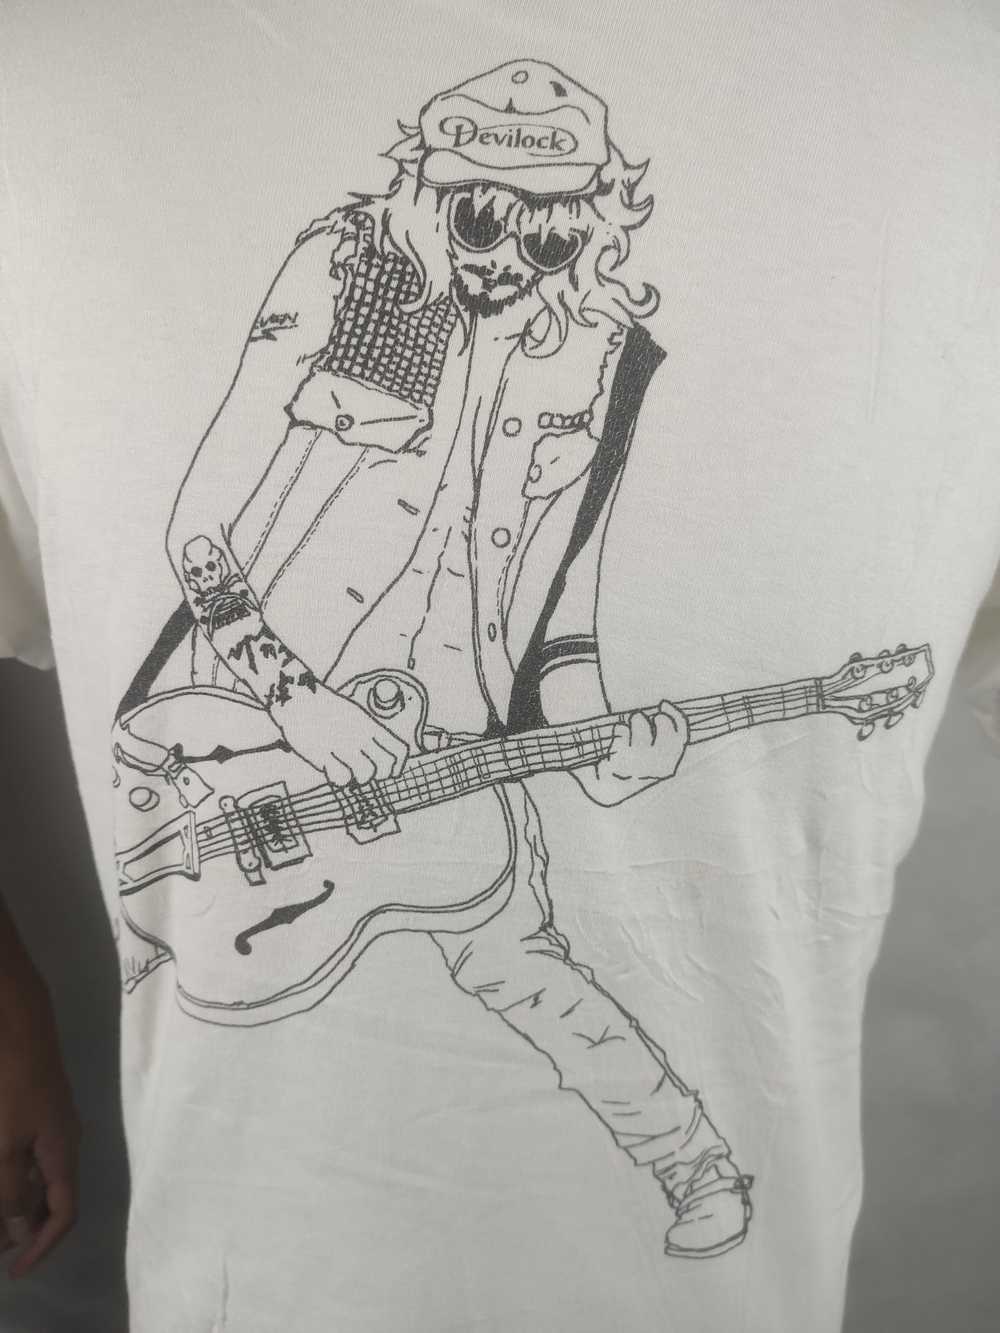 Devilock Devilock Guitarist Shirt - image 3